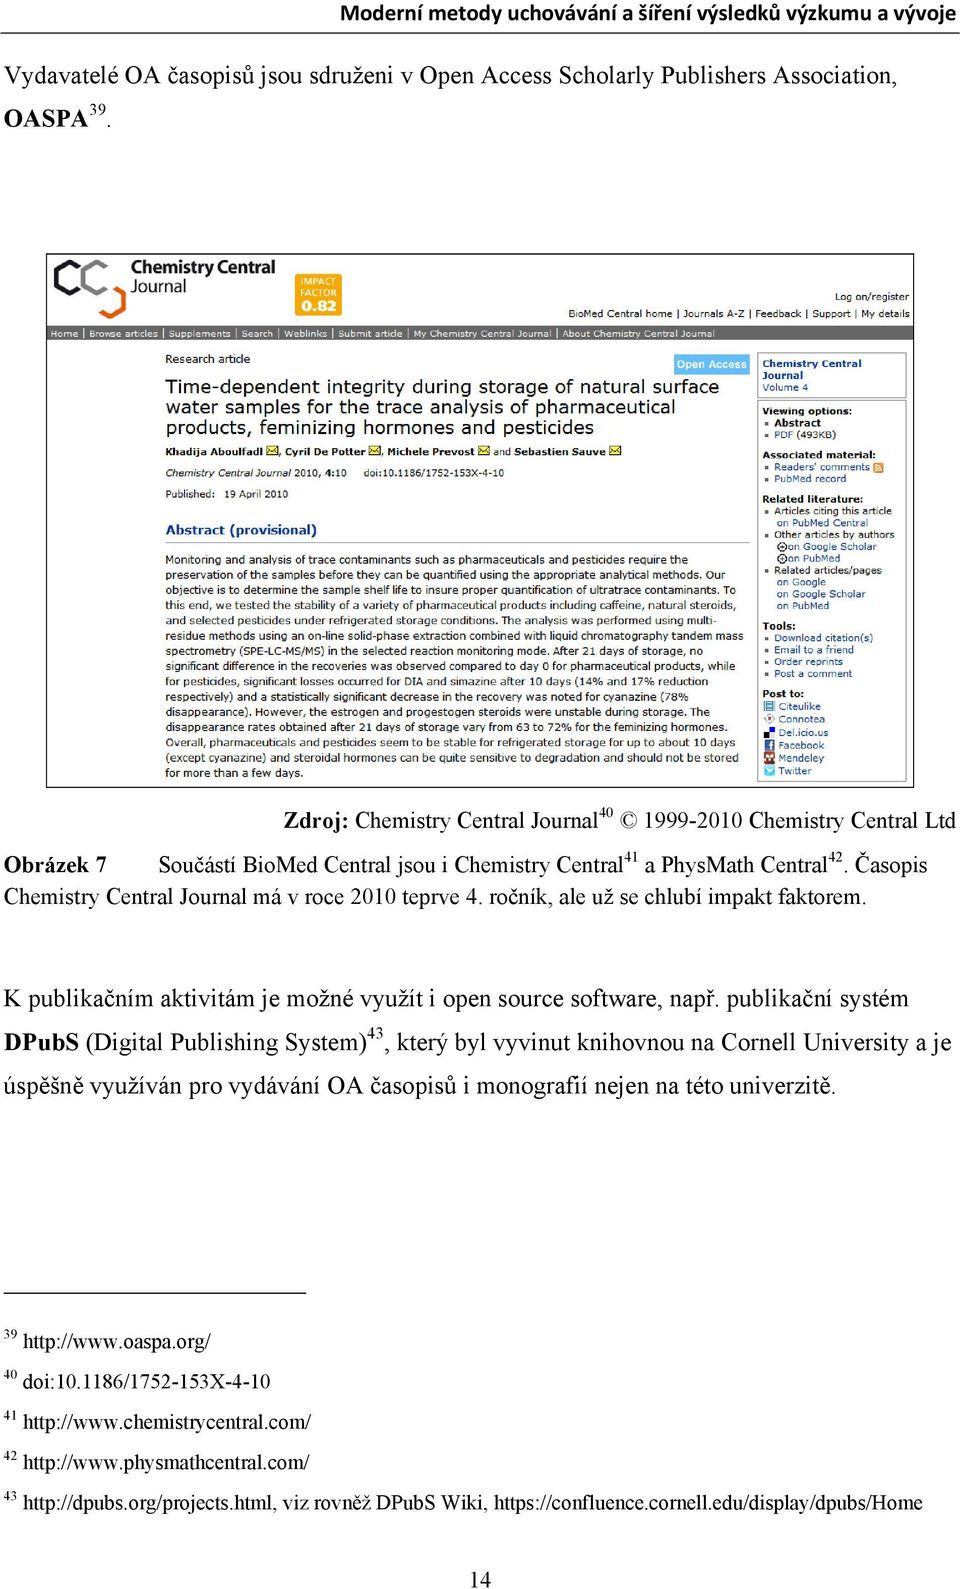 Časopis Chemistry Central Journal má v roce 2010 teprve 4. ročník, ale už se chlubí impakt faktorem. K publikačním aktivitám je možné využít i open source software, např.